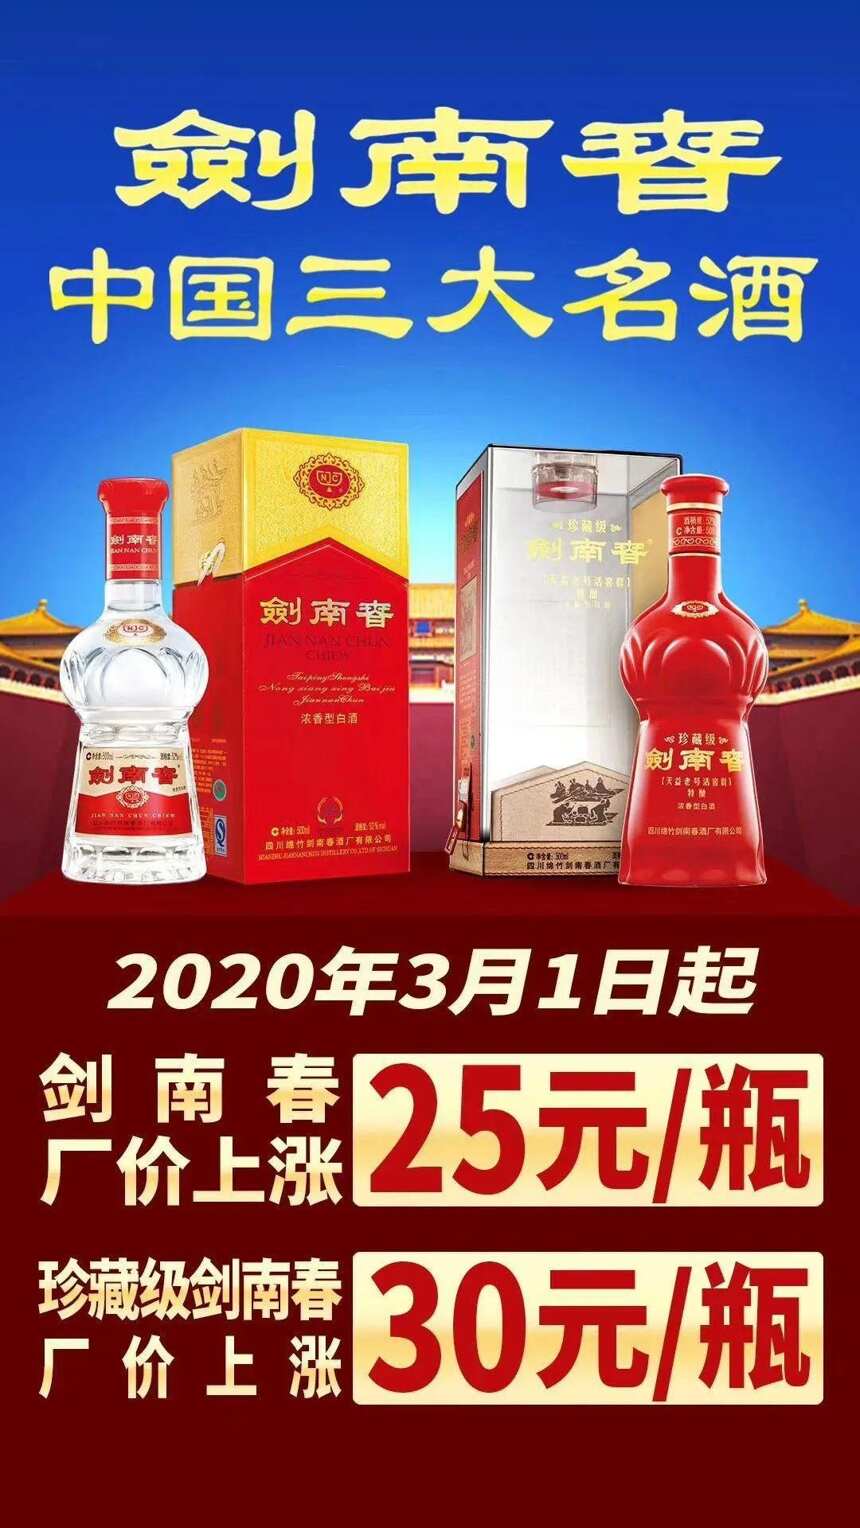 酒企动态丨剑南春2020年全部市场首轮涨价将于3月1日完成